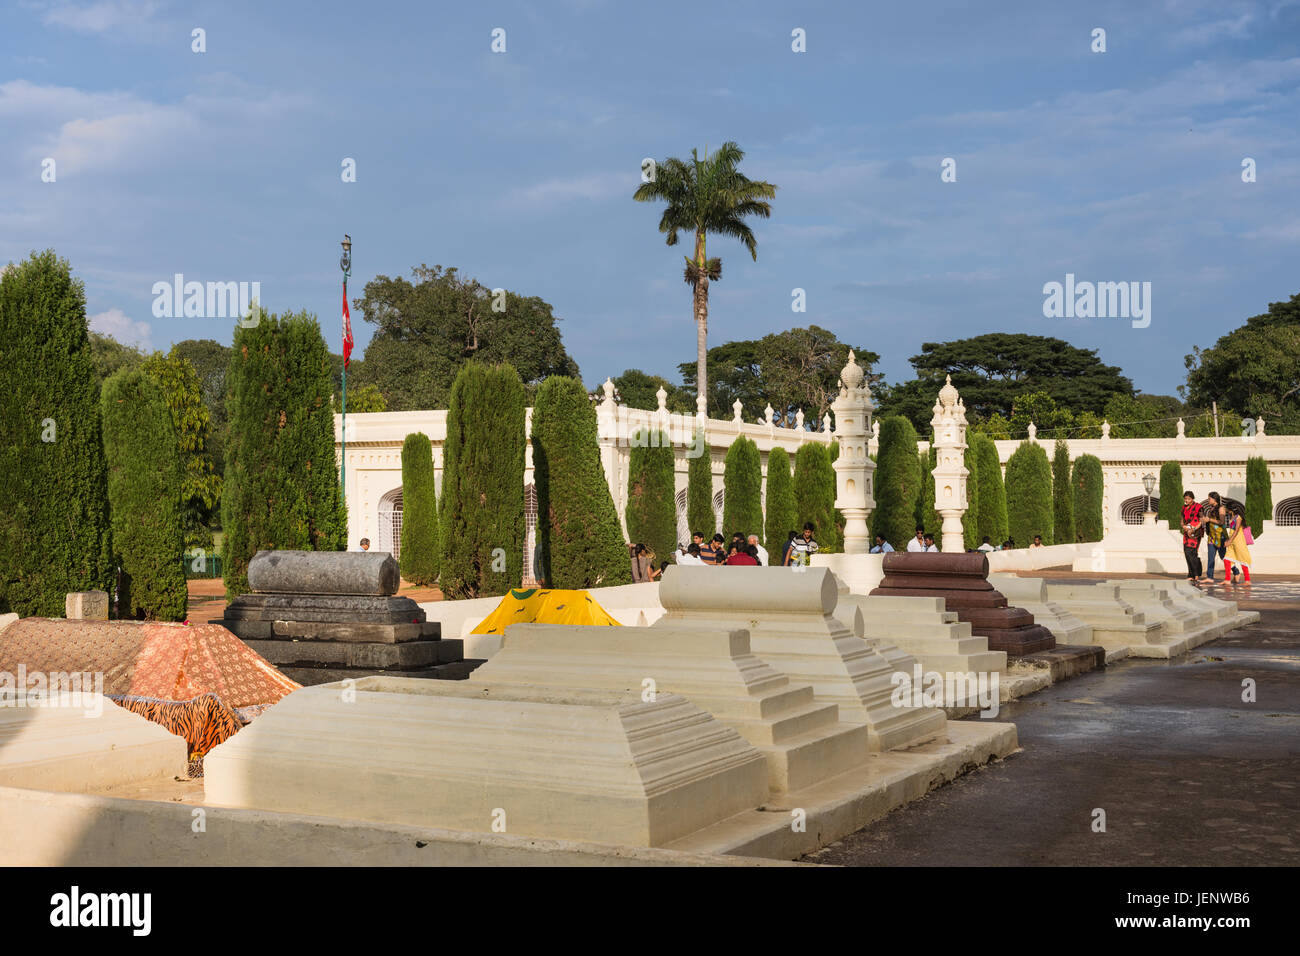 Mysore, Indien - 26. Oktober 2013: Friedhof mit klassischen muslimische Gräber der Generäle und Verwaltung top Hunde Tipu Sultan Mausoleum unter blauem Himmel. Stockfoto